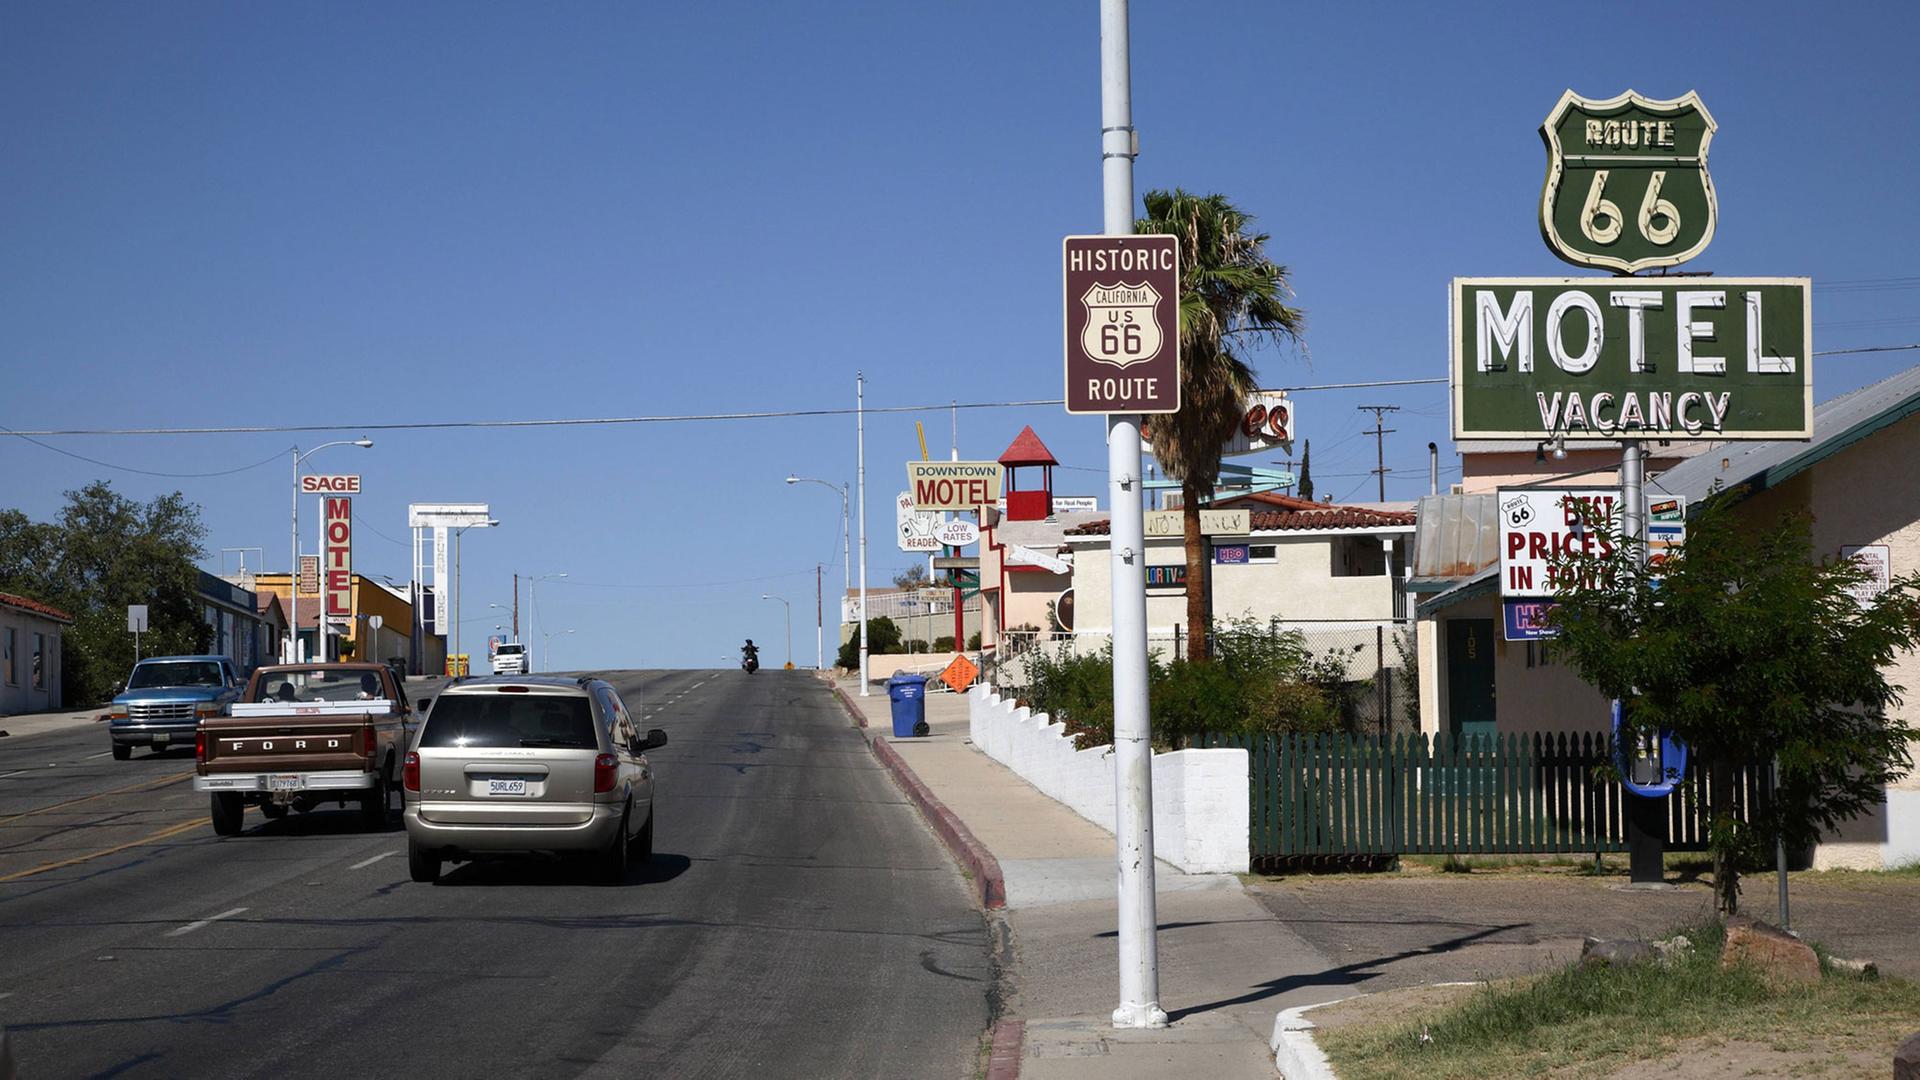 Werbeschild Motel Vacancy und Hinweisschild Route 66 an einer Straße in Barstow, Kalifornien